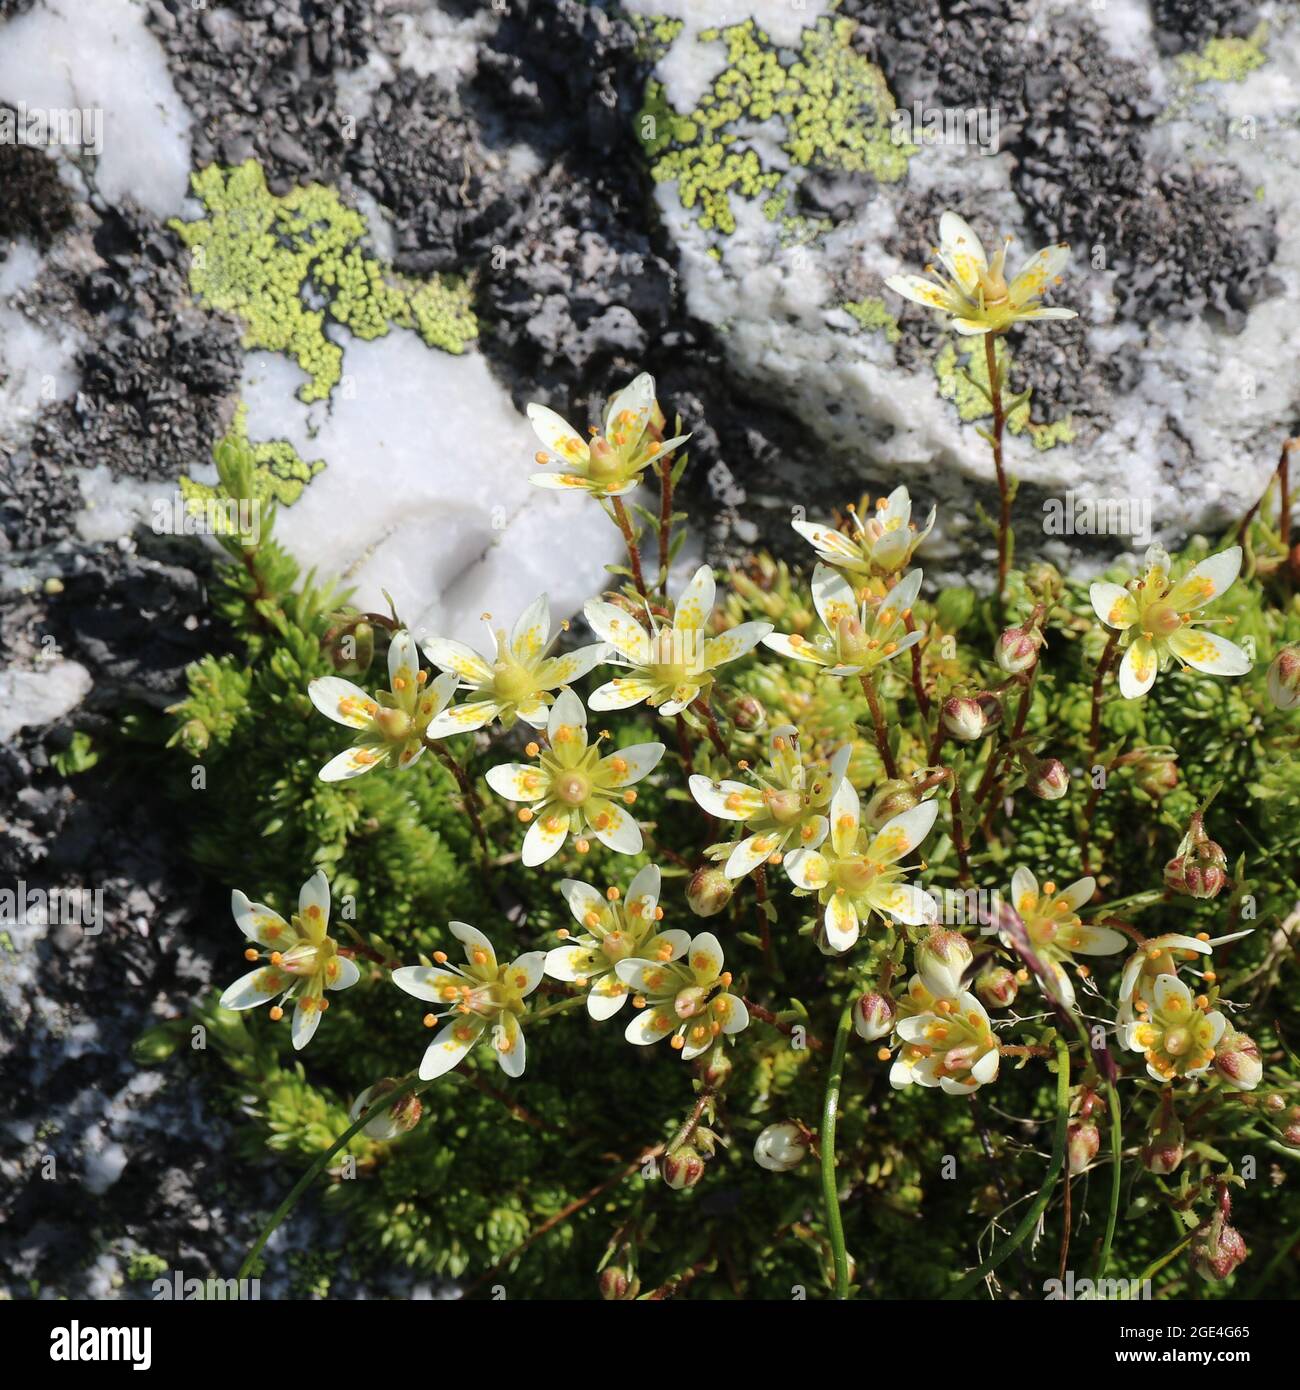 White yellow saxifrage seen in the Pizol region. Stock Photo